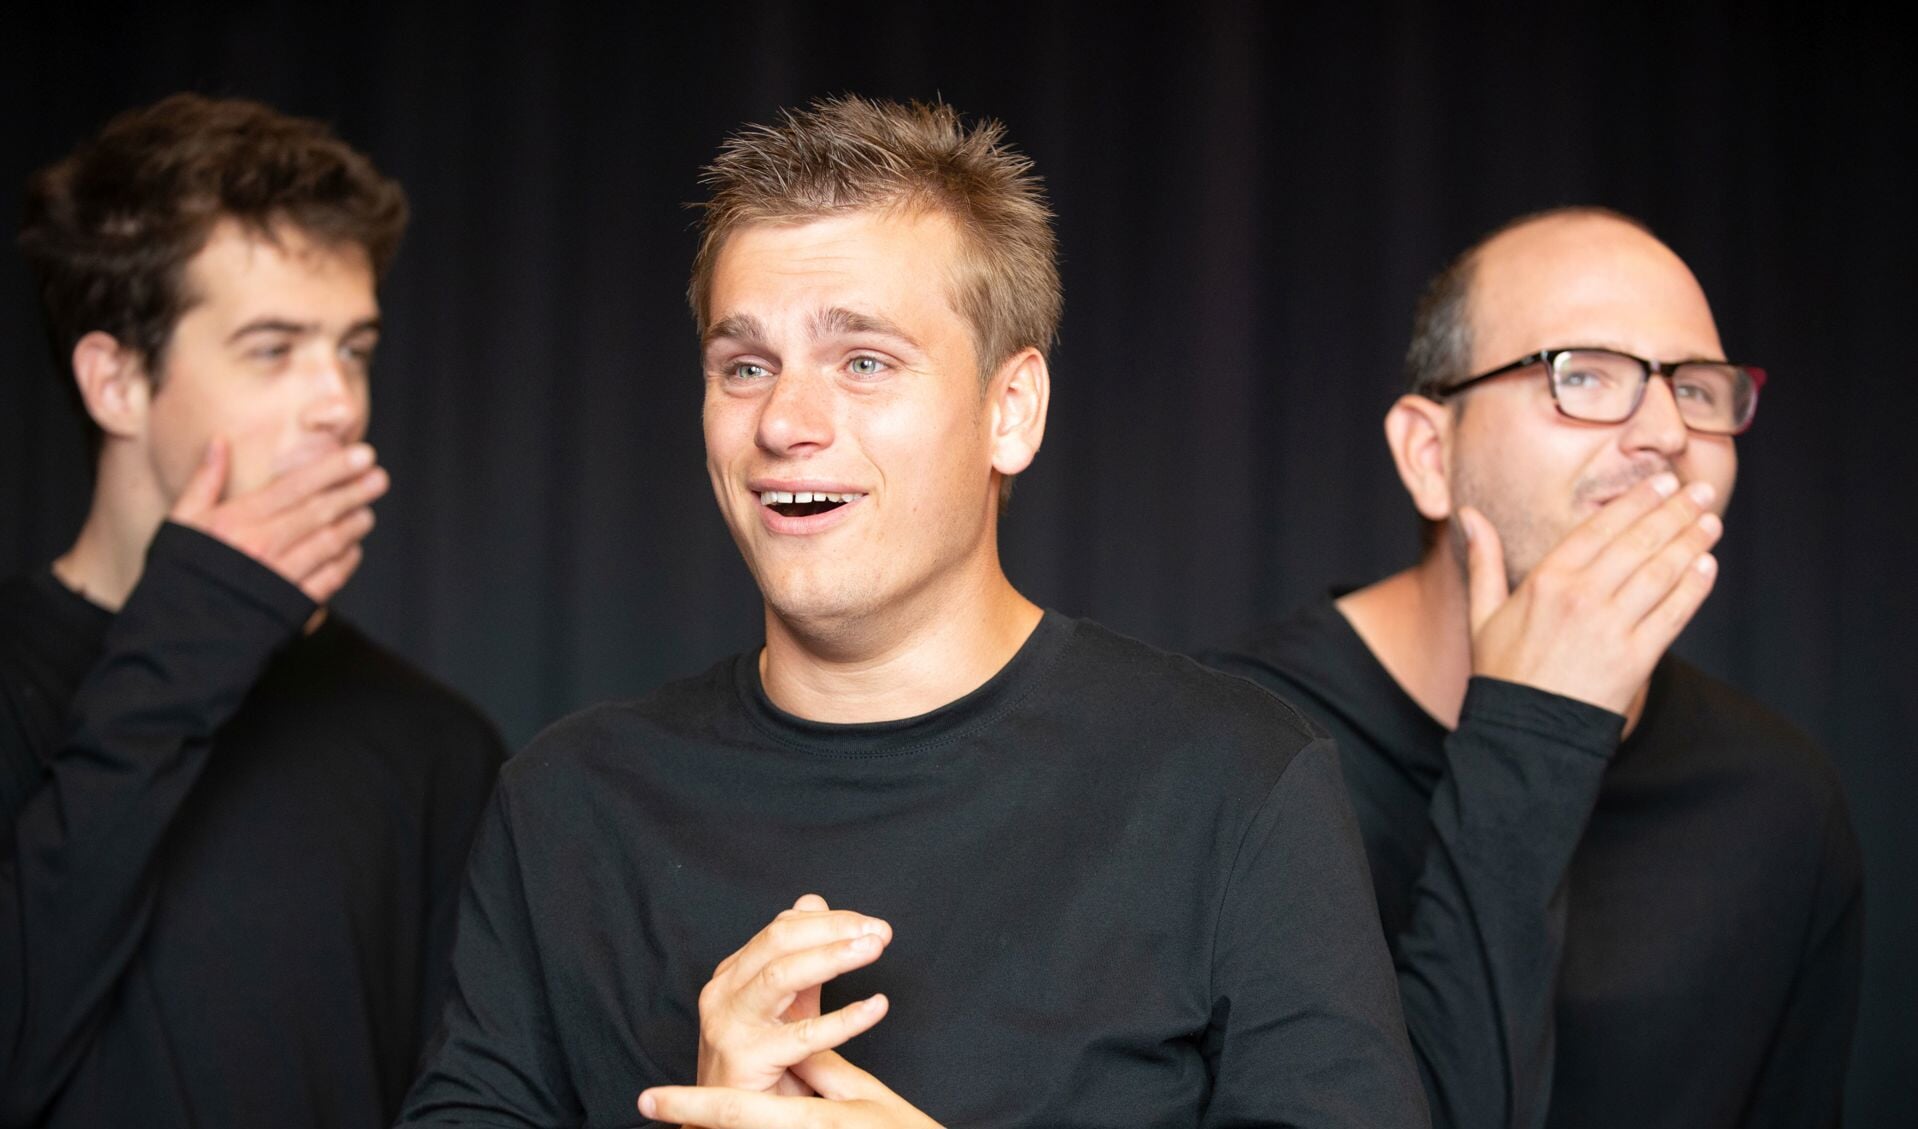 vlnr: Jip Rijpers, Jaïr van der Laan en Igor Memic, acteurs bij Theaterwerkplaats Tiuri, tijdens een repetitie voor de voorstelling Op zoek naar ík